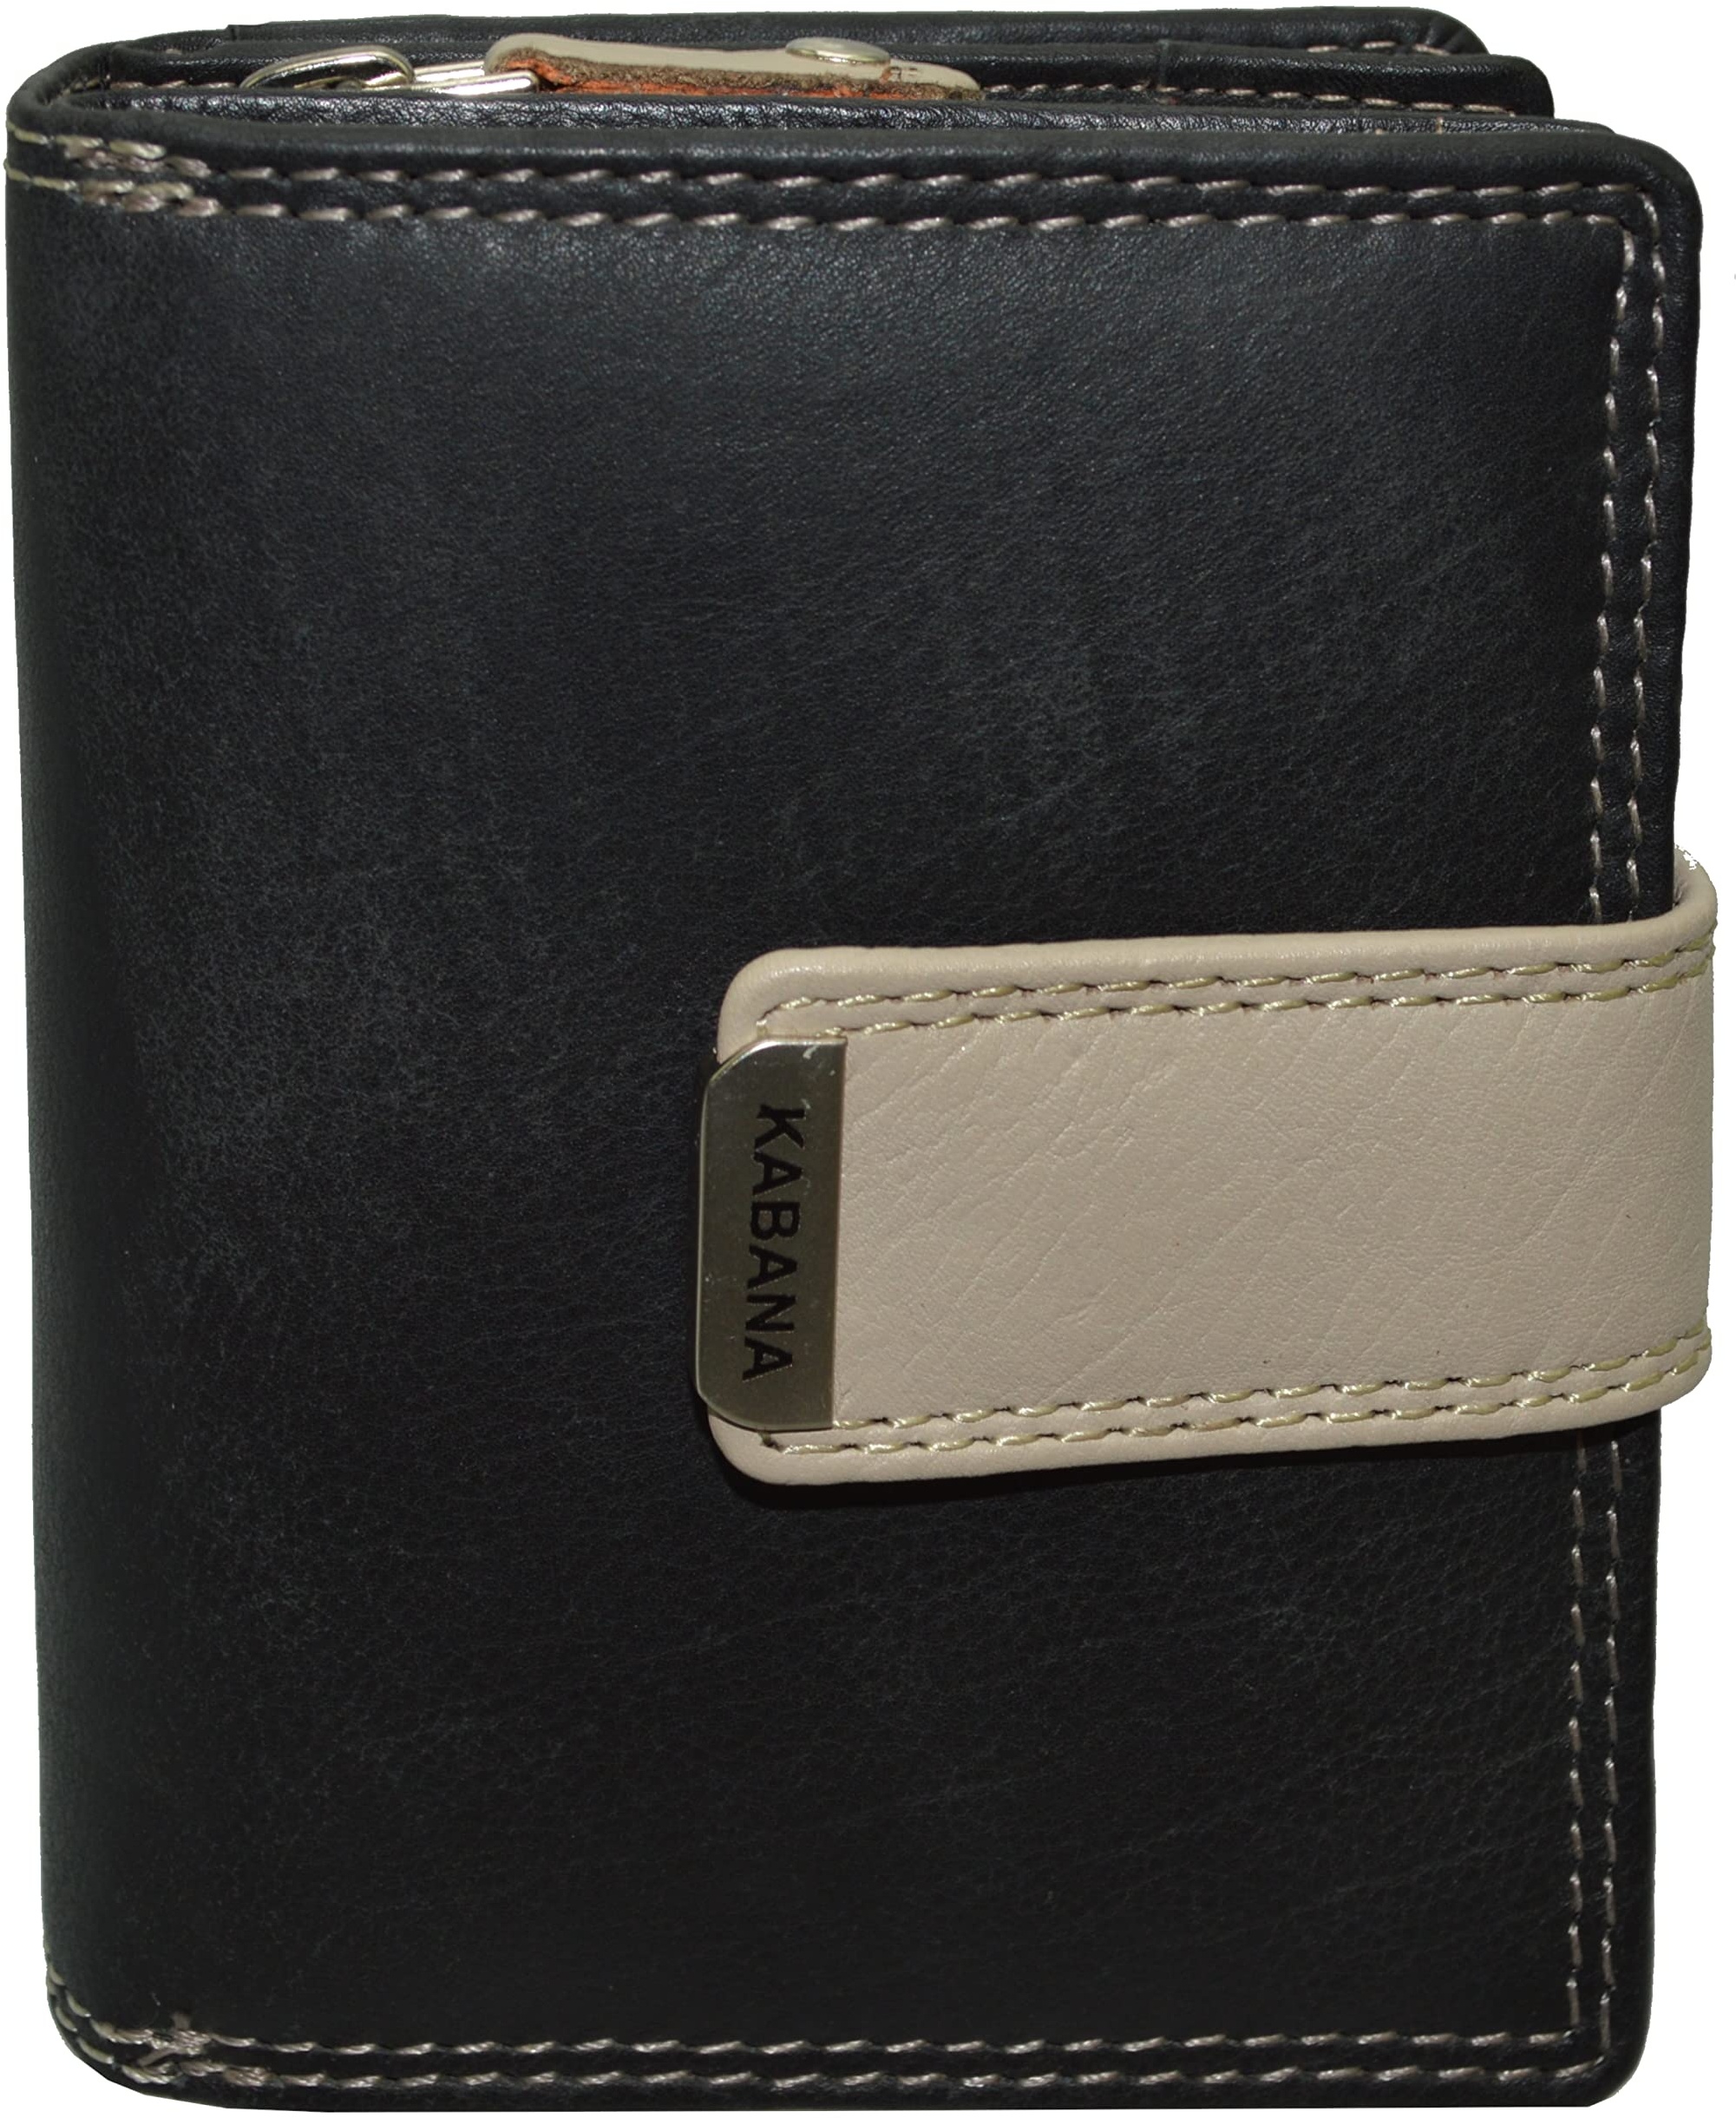 flevado Damengeldbörse Brieftasche Echt Leder mit Riegelverschluss RFID Schutz Handarbeit Farbe wählbar (schwarz beige)